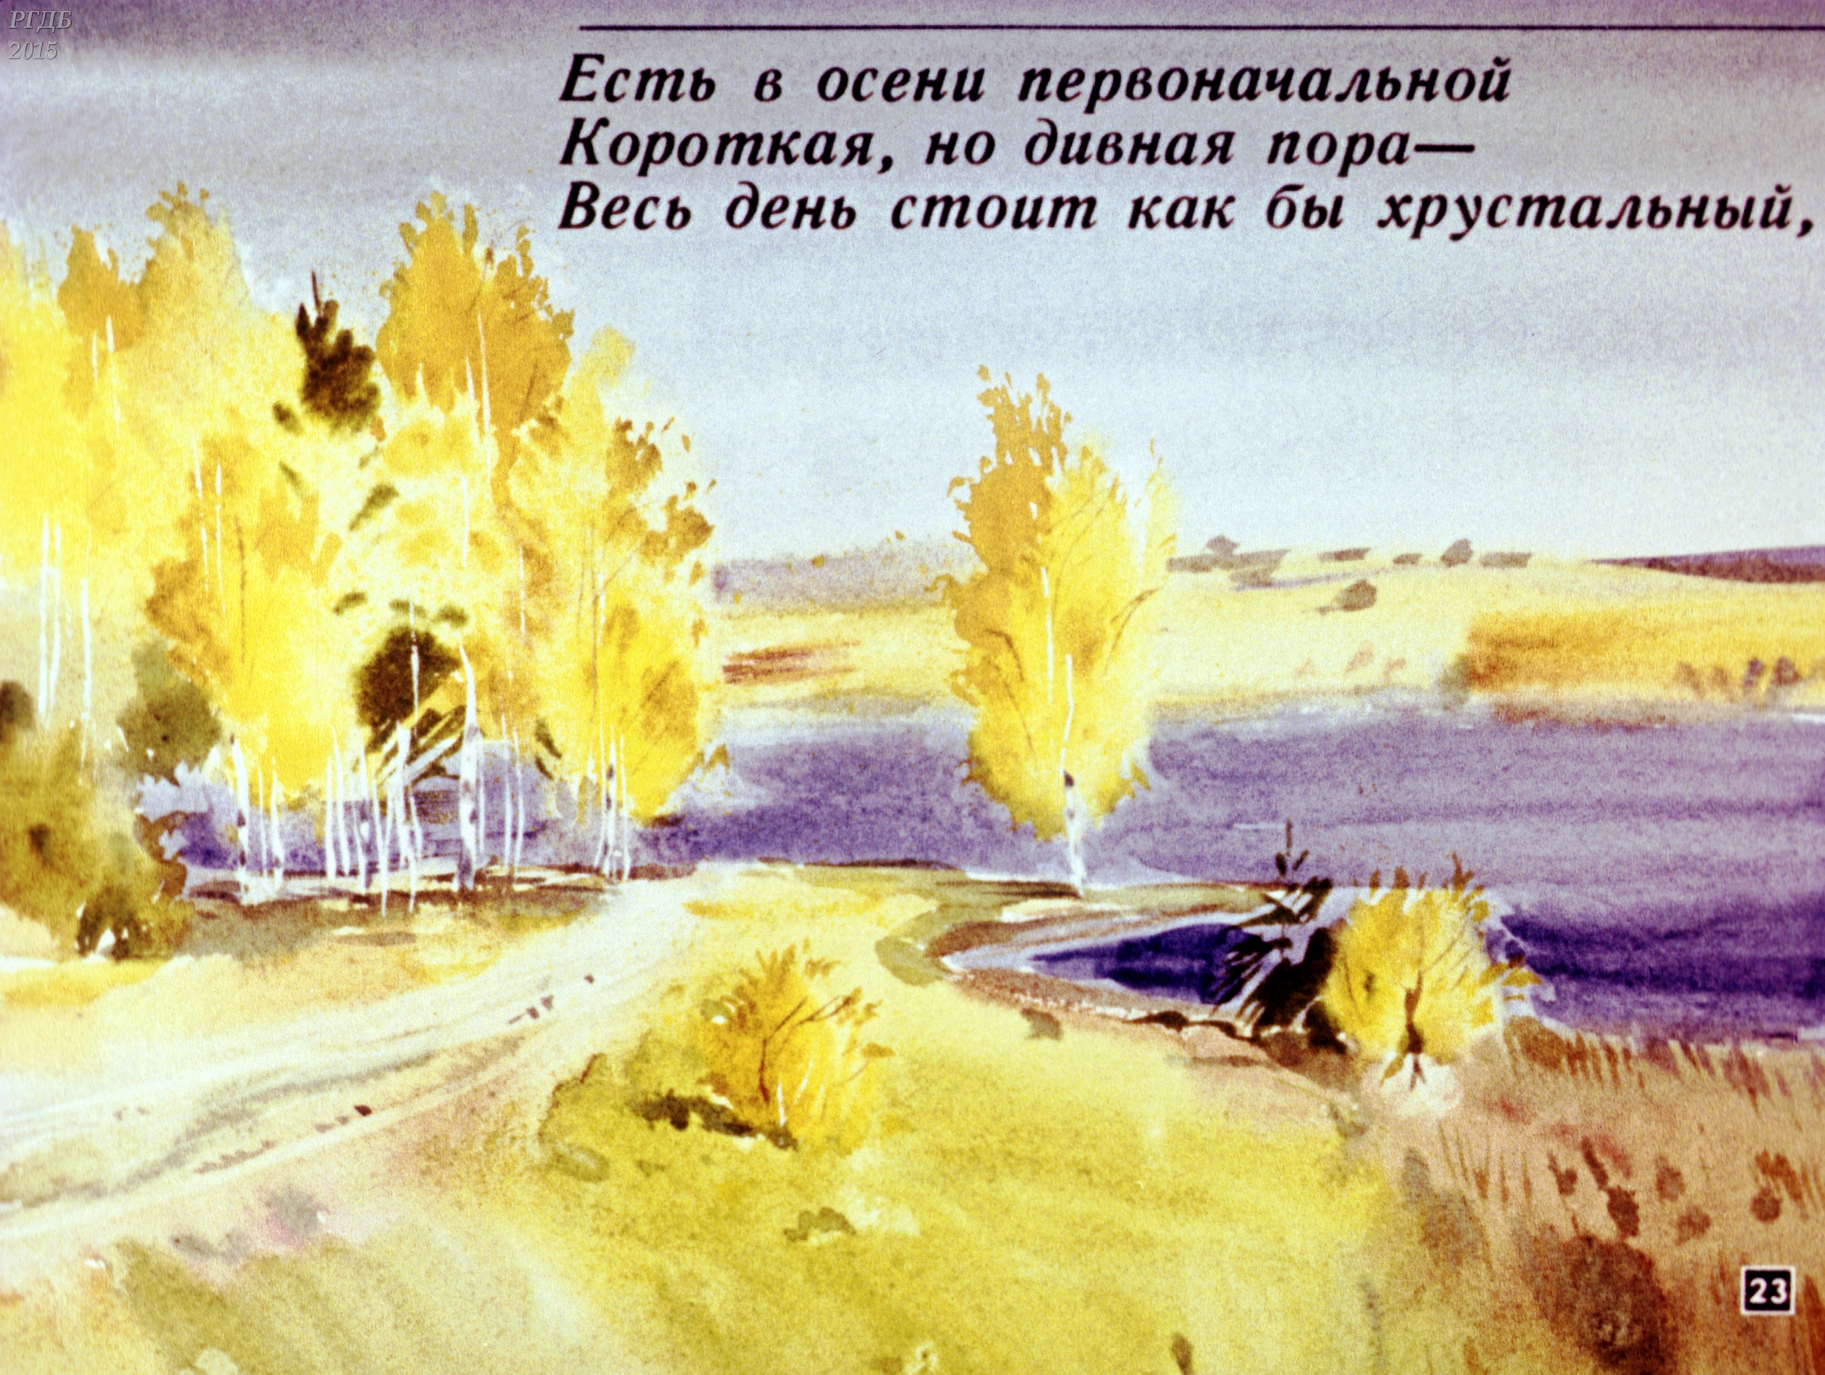 Иллюстрация Федора Тютчева есть осени первоначальной